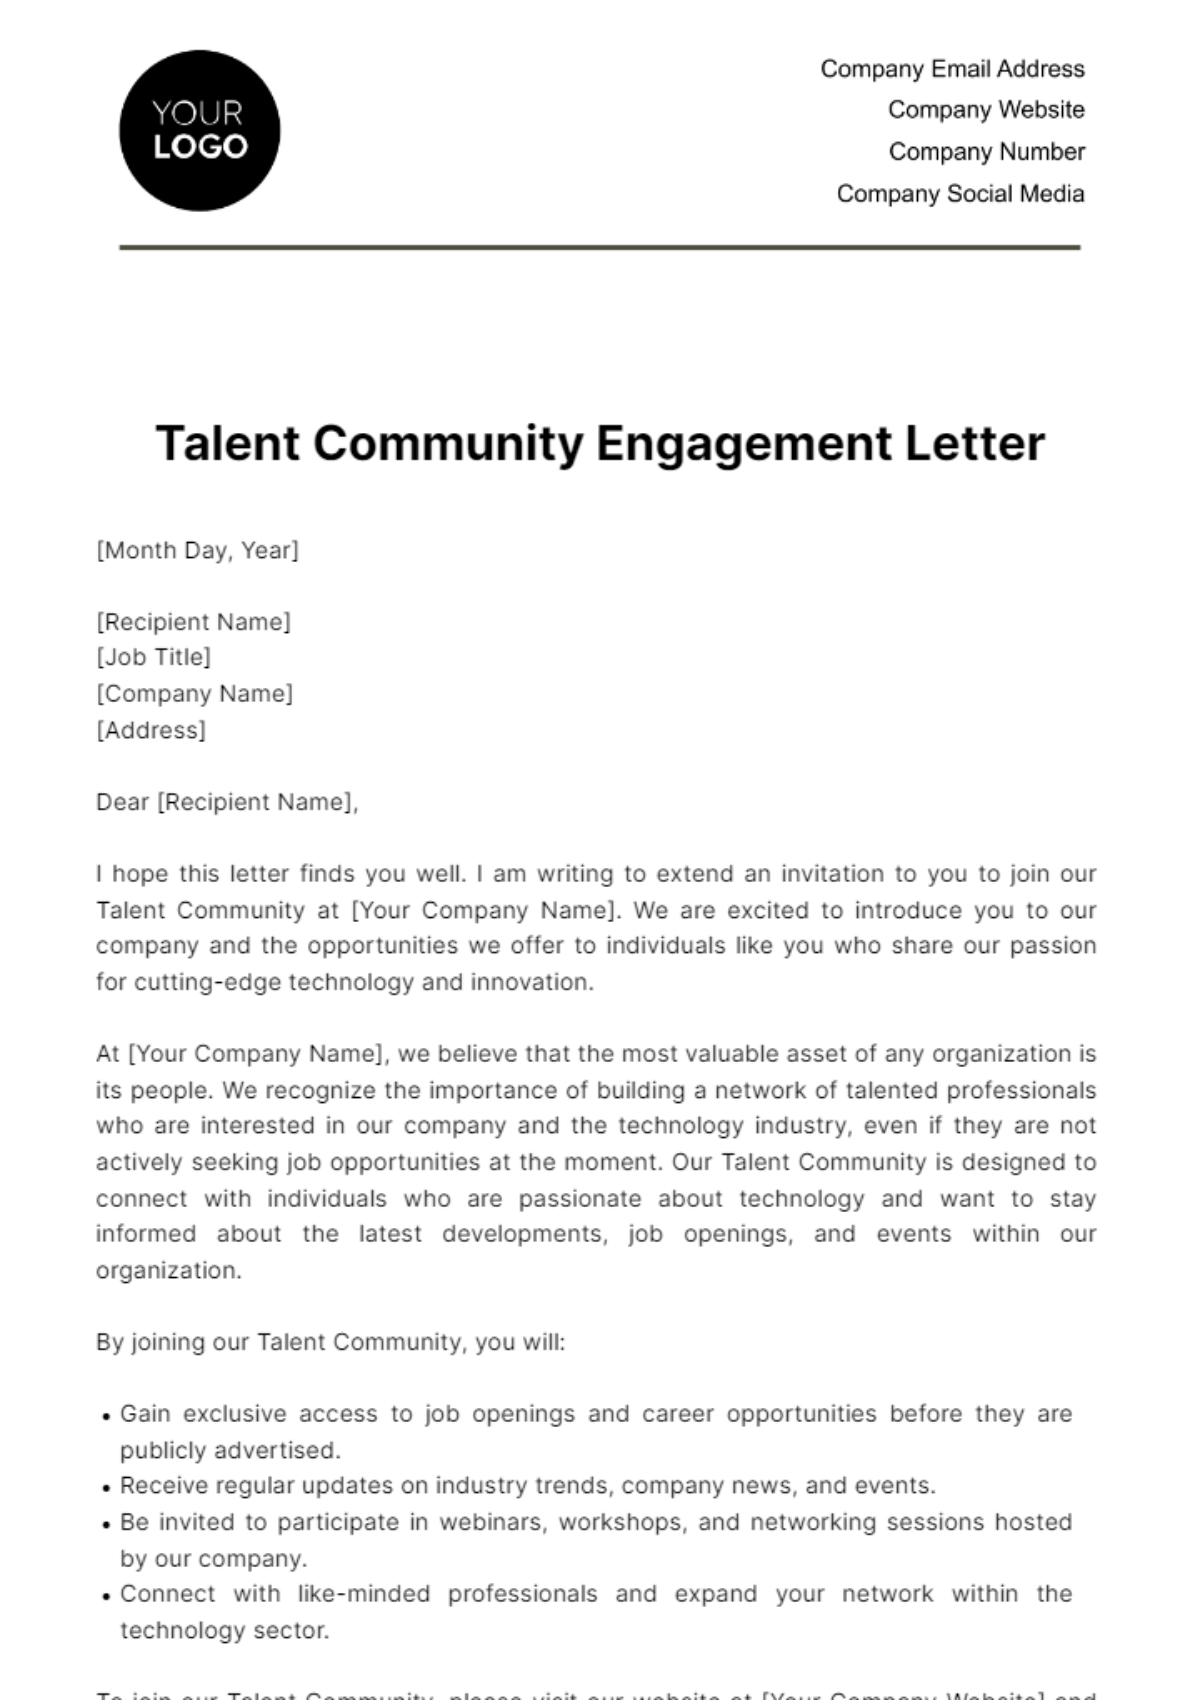 Talent Community Engagement Letter HR Template